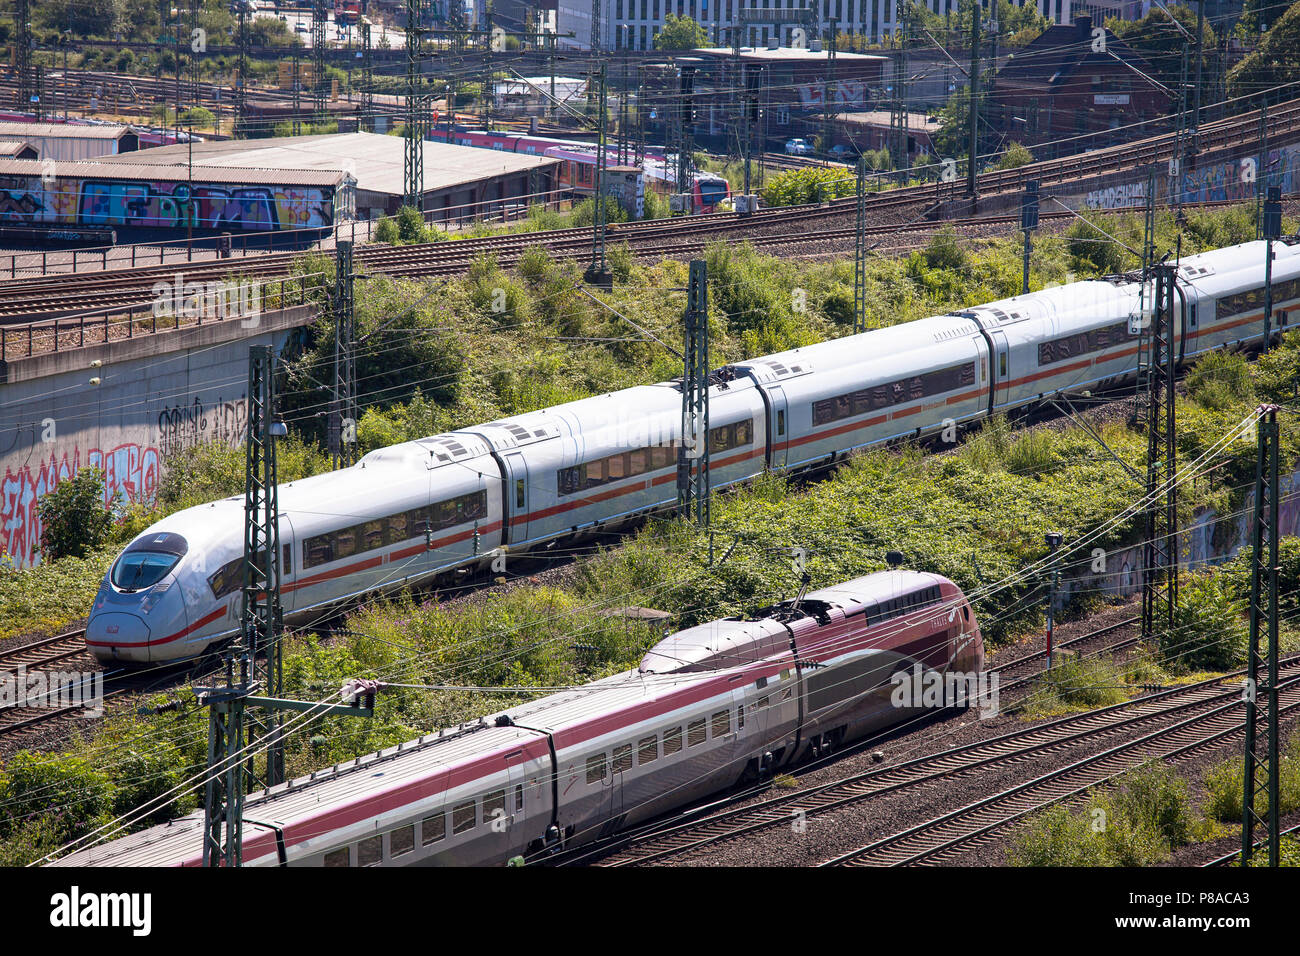 high speed trains Thalys and ICE, Cologne, Germany.  Hochgeschwindigkeitszuege Thalys und ICE, Koeln, Deutschland. Stock Photo